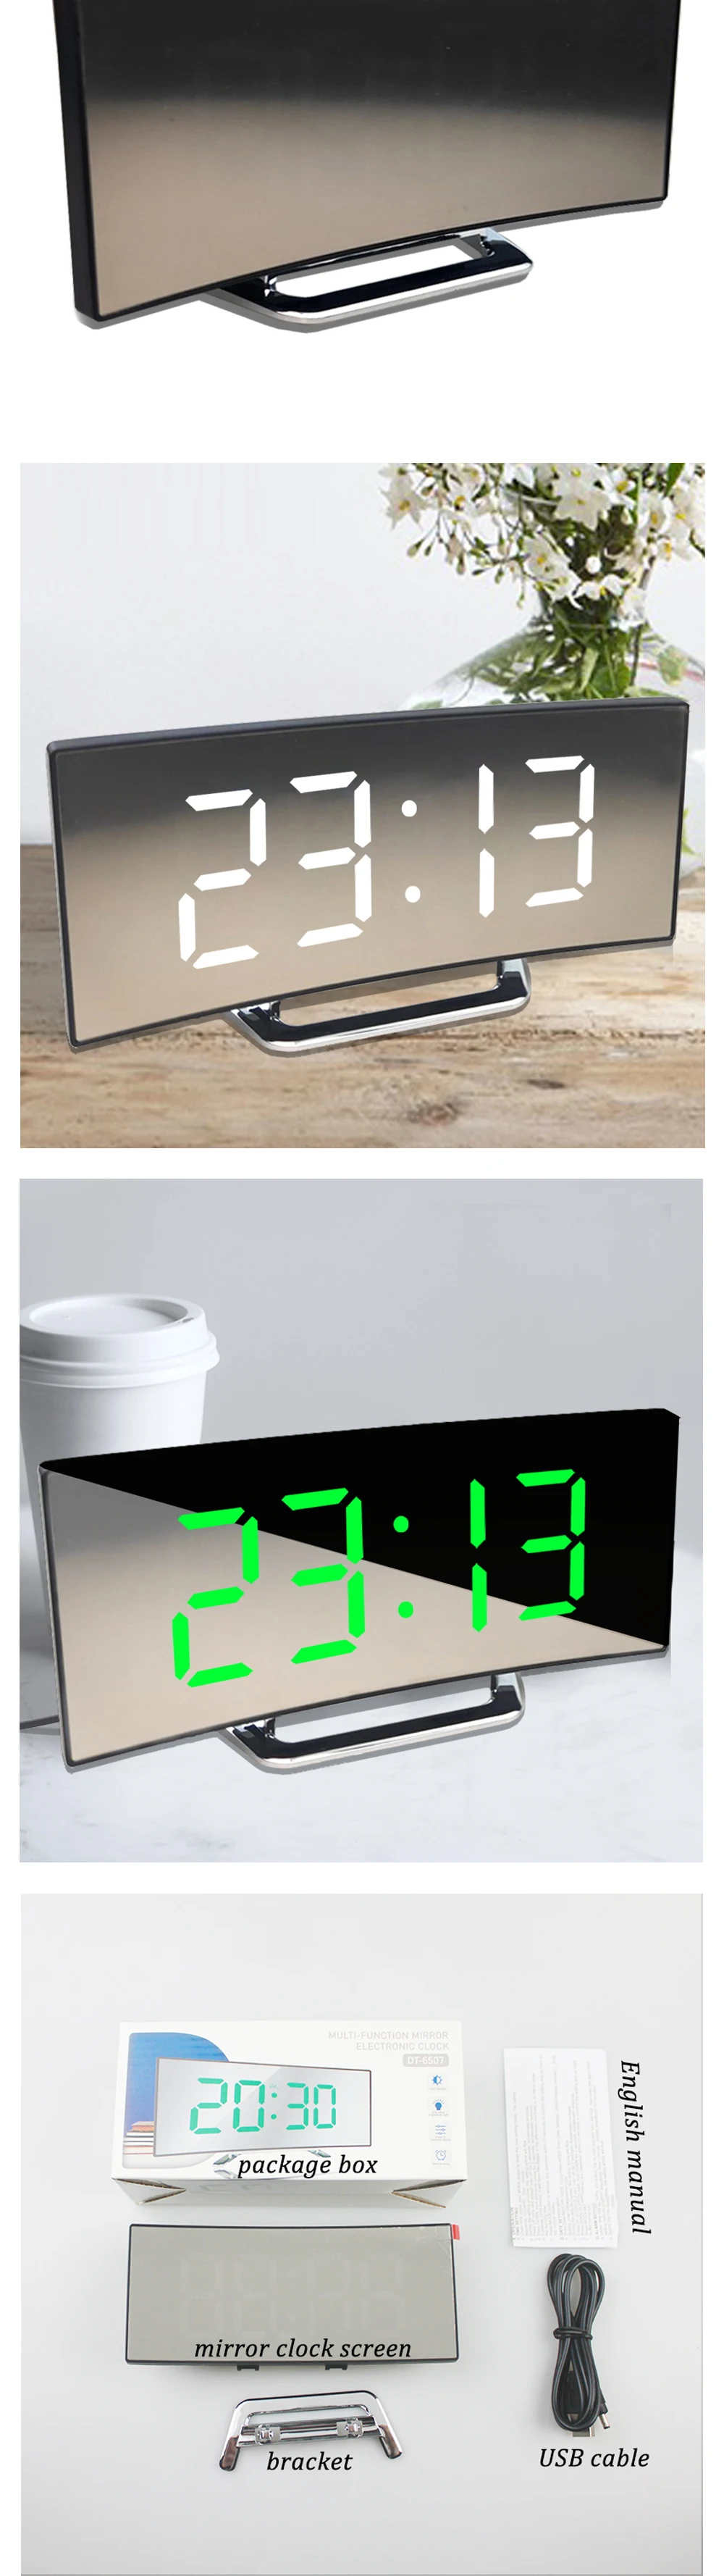 Réveil numérique réveils pour enfants chambre température Snooze fonction bureau Table horloge LED horloge électronique horloge Table